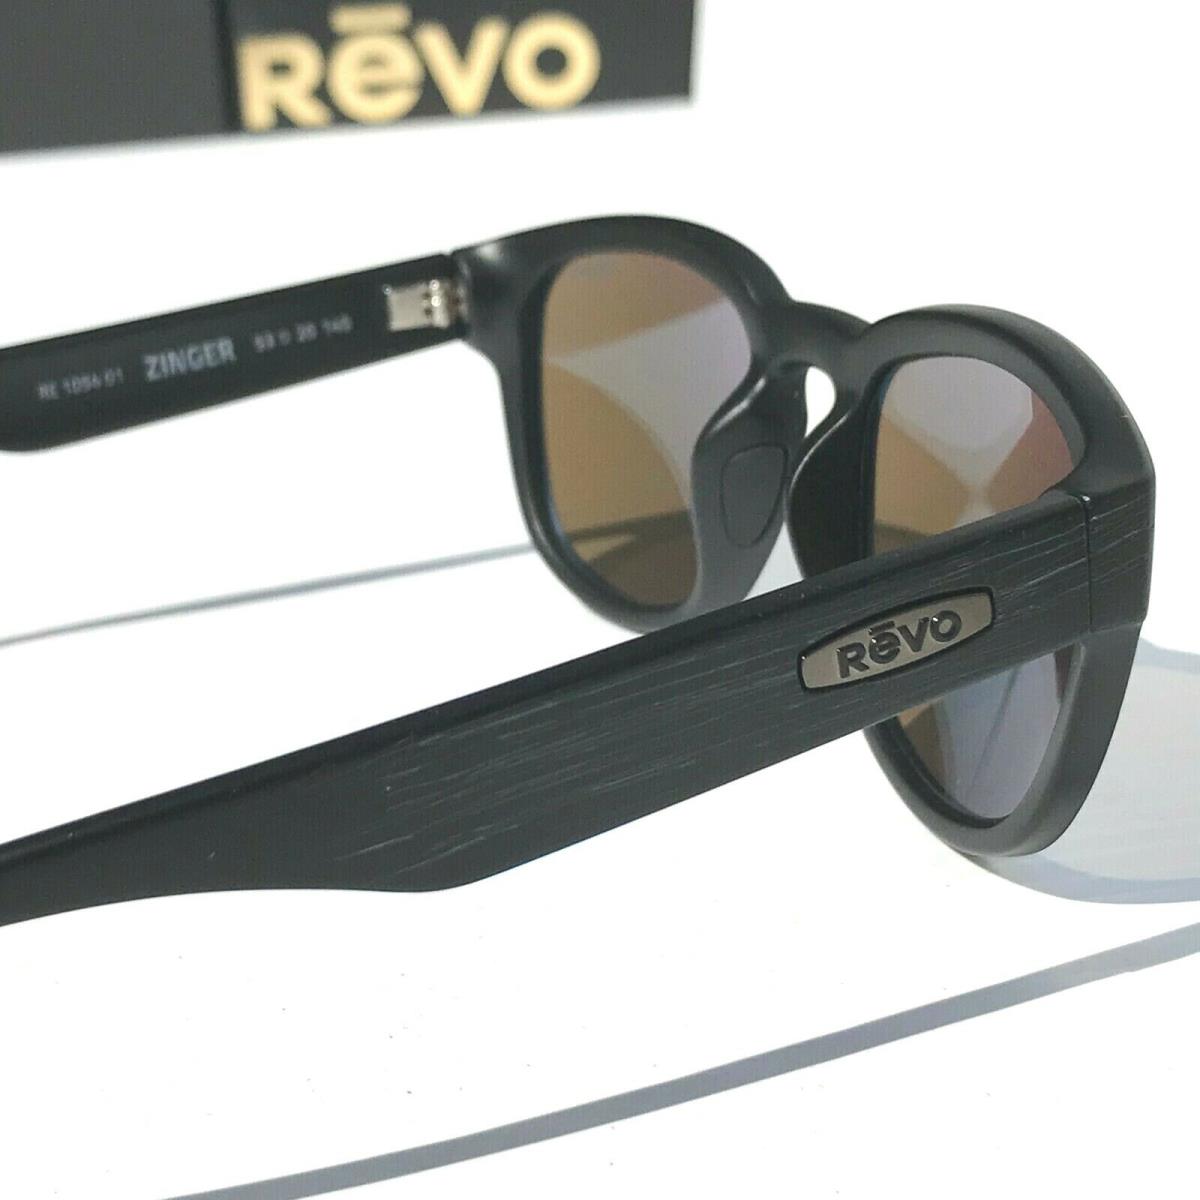 Revo sunglasses Zinger - Black Frame, Gray Lens